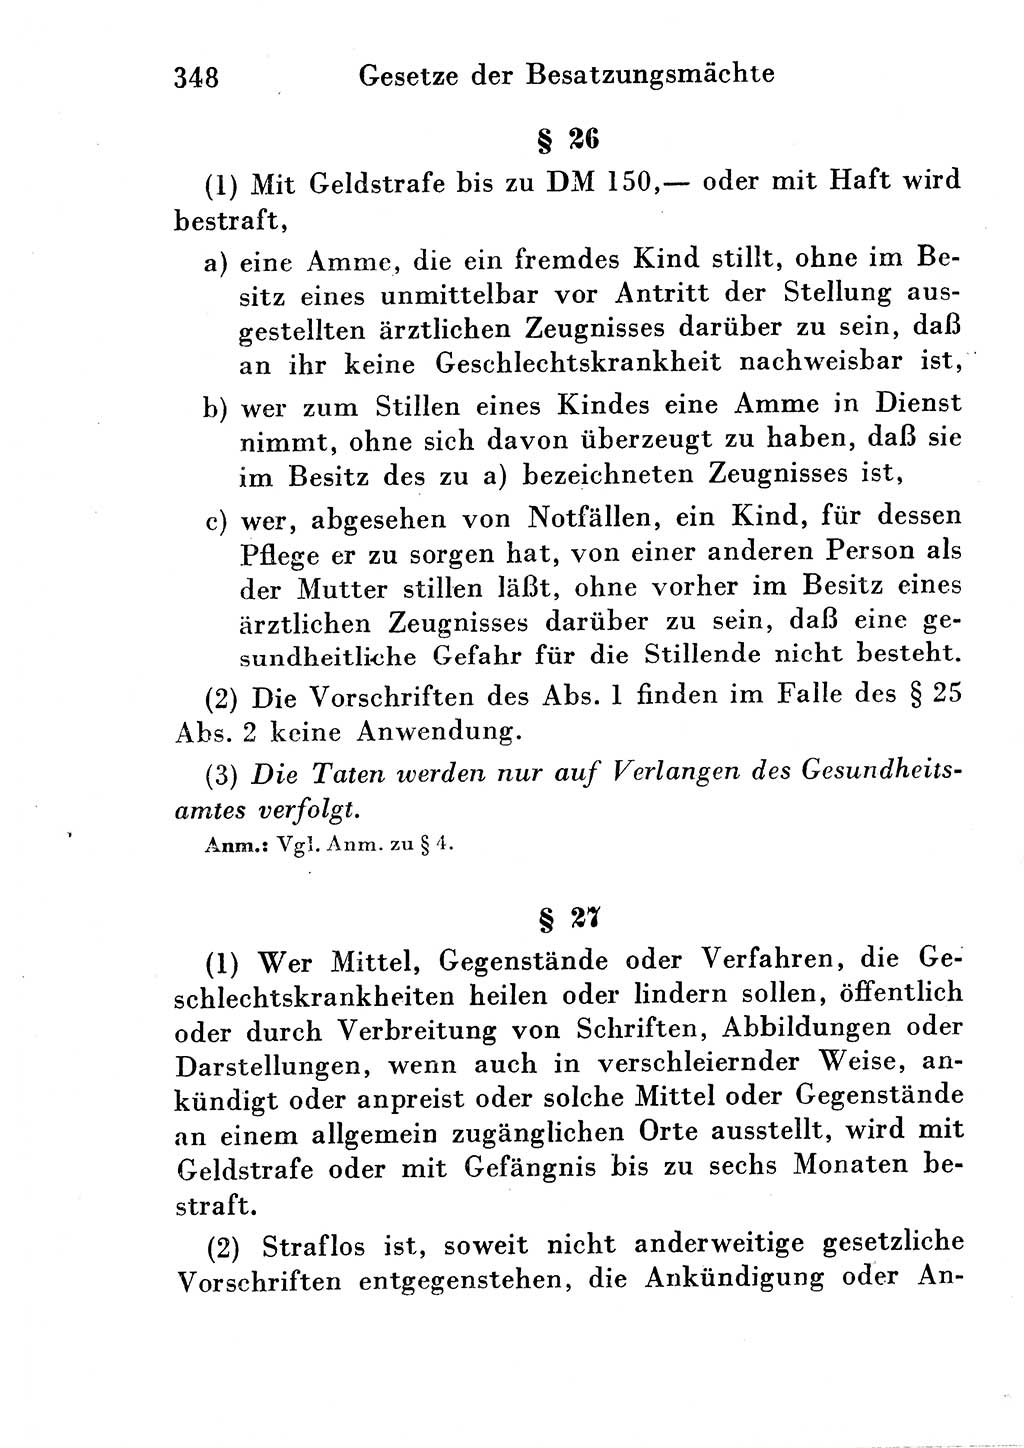 Strafgesetzbuch (StGB) und andere Strafgesetze [Deutsche Demokratische Republik (DDR)] 1954, Seite 348 (StGB Strafges. DDR 1954, S. 348)